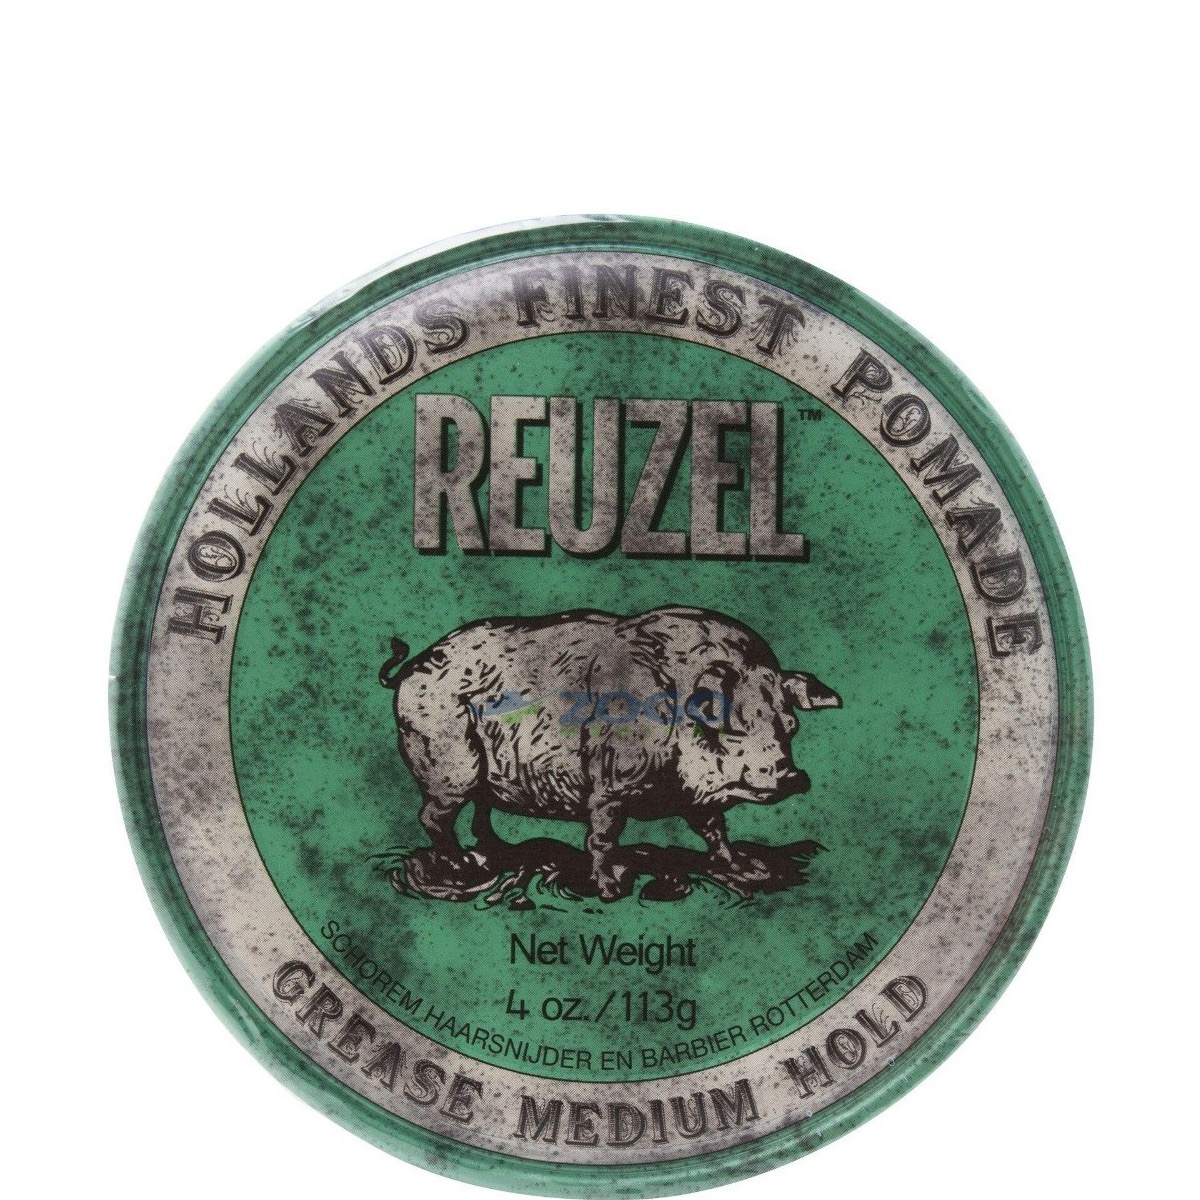  Reuzel Pomade Green Grease - 1.1 - REU-002